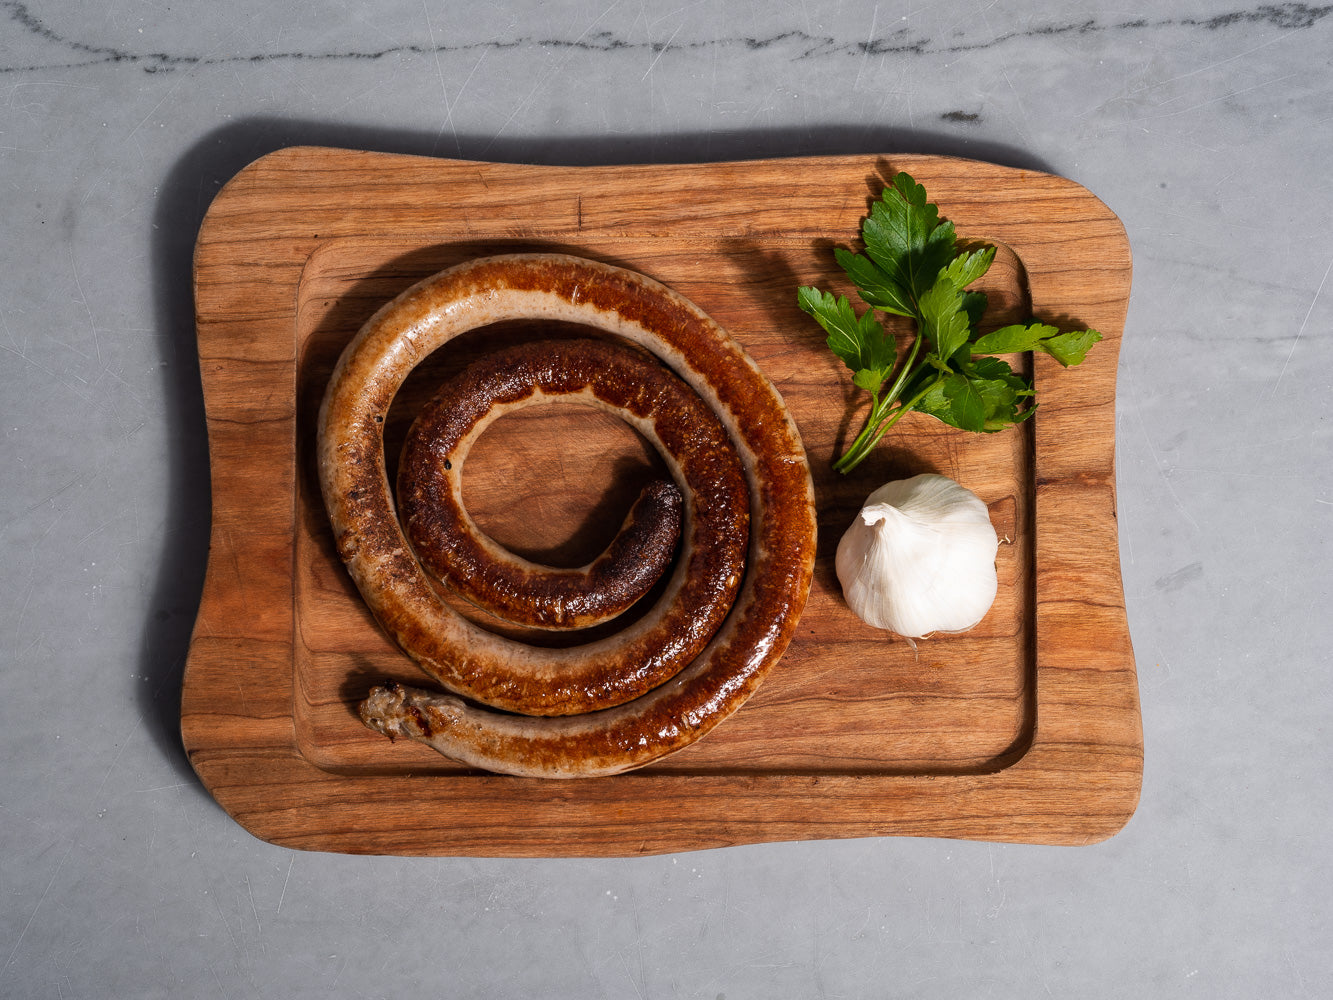 Turkey Sweet Italian Sausage from Pepe Giocoli | Heritage Foods